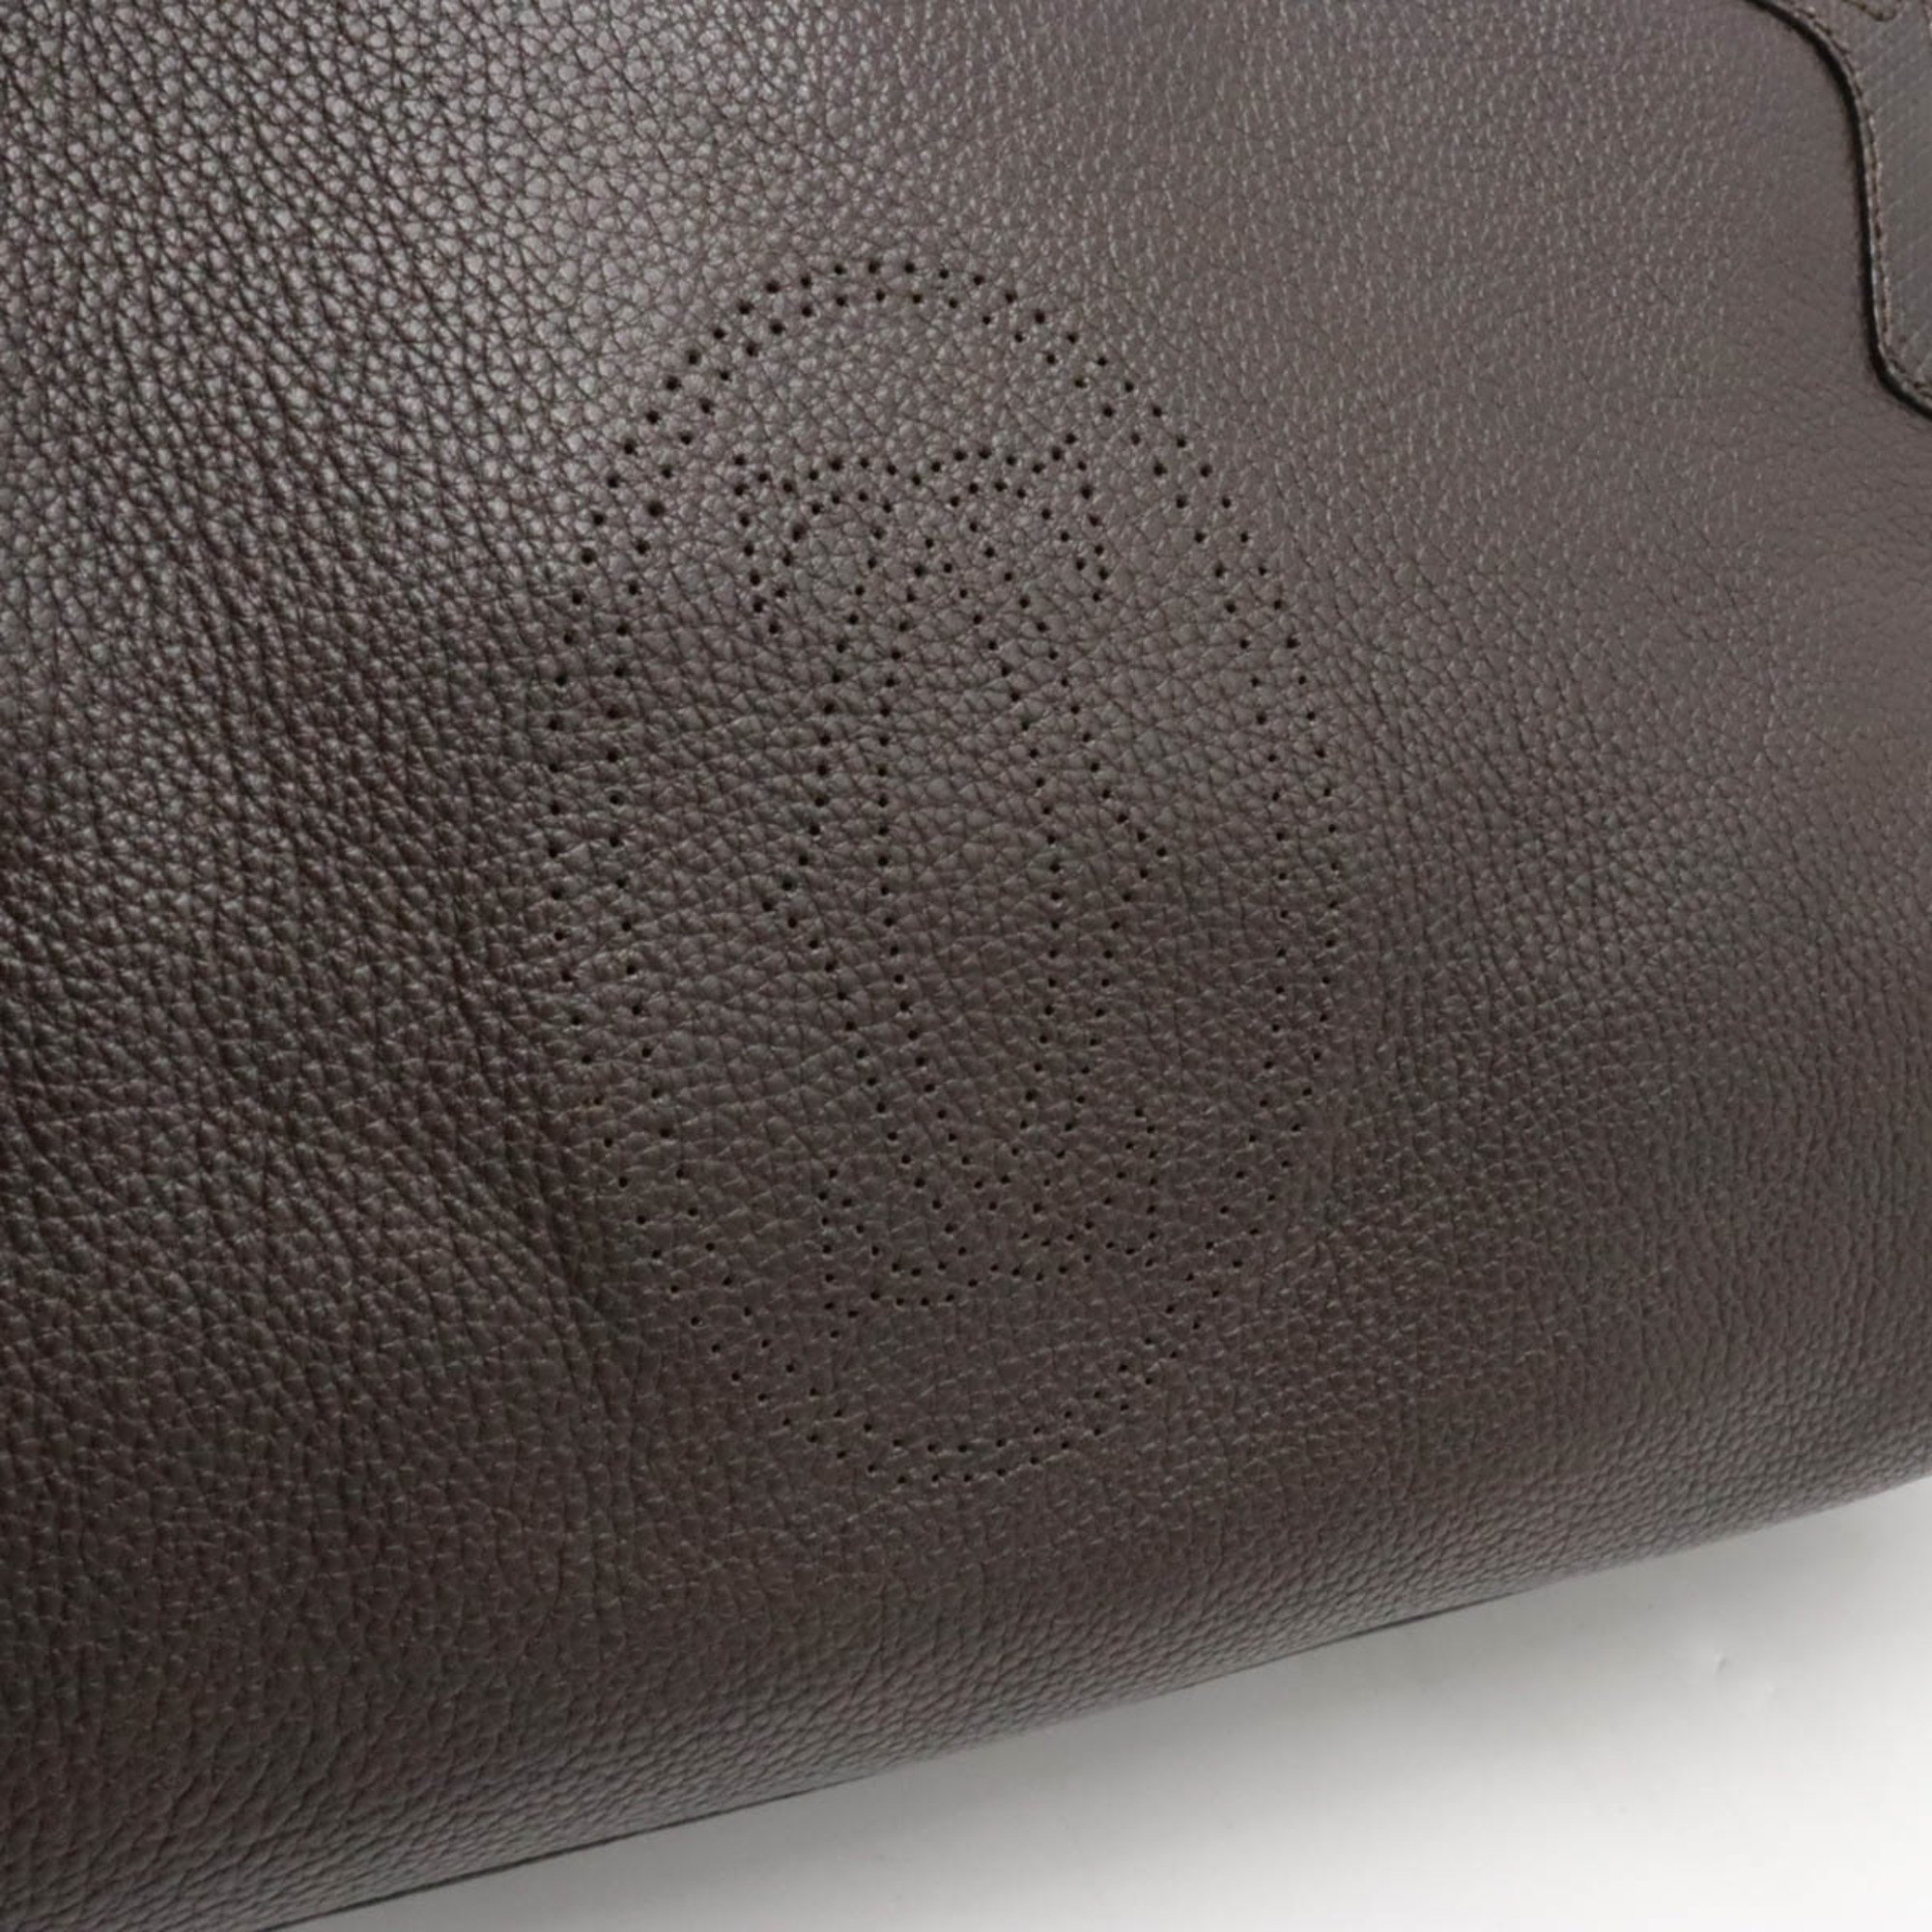 Cartier Marcello de Handbag Tote Bag Shoulder Leather Dark Brown